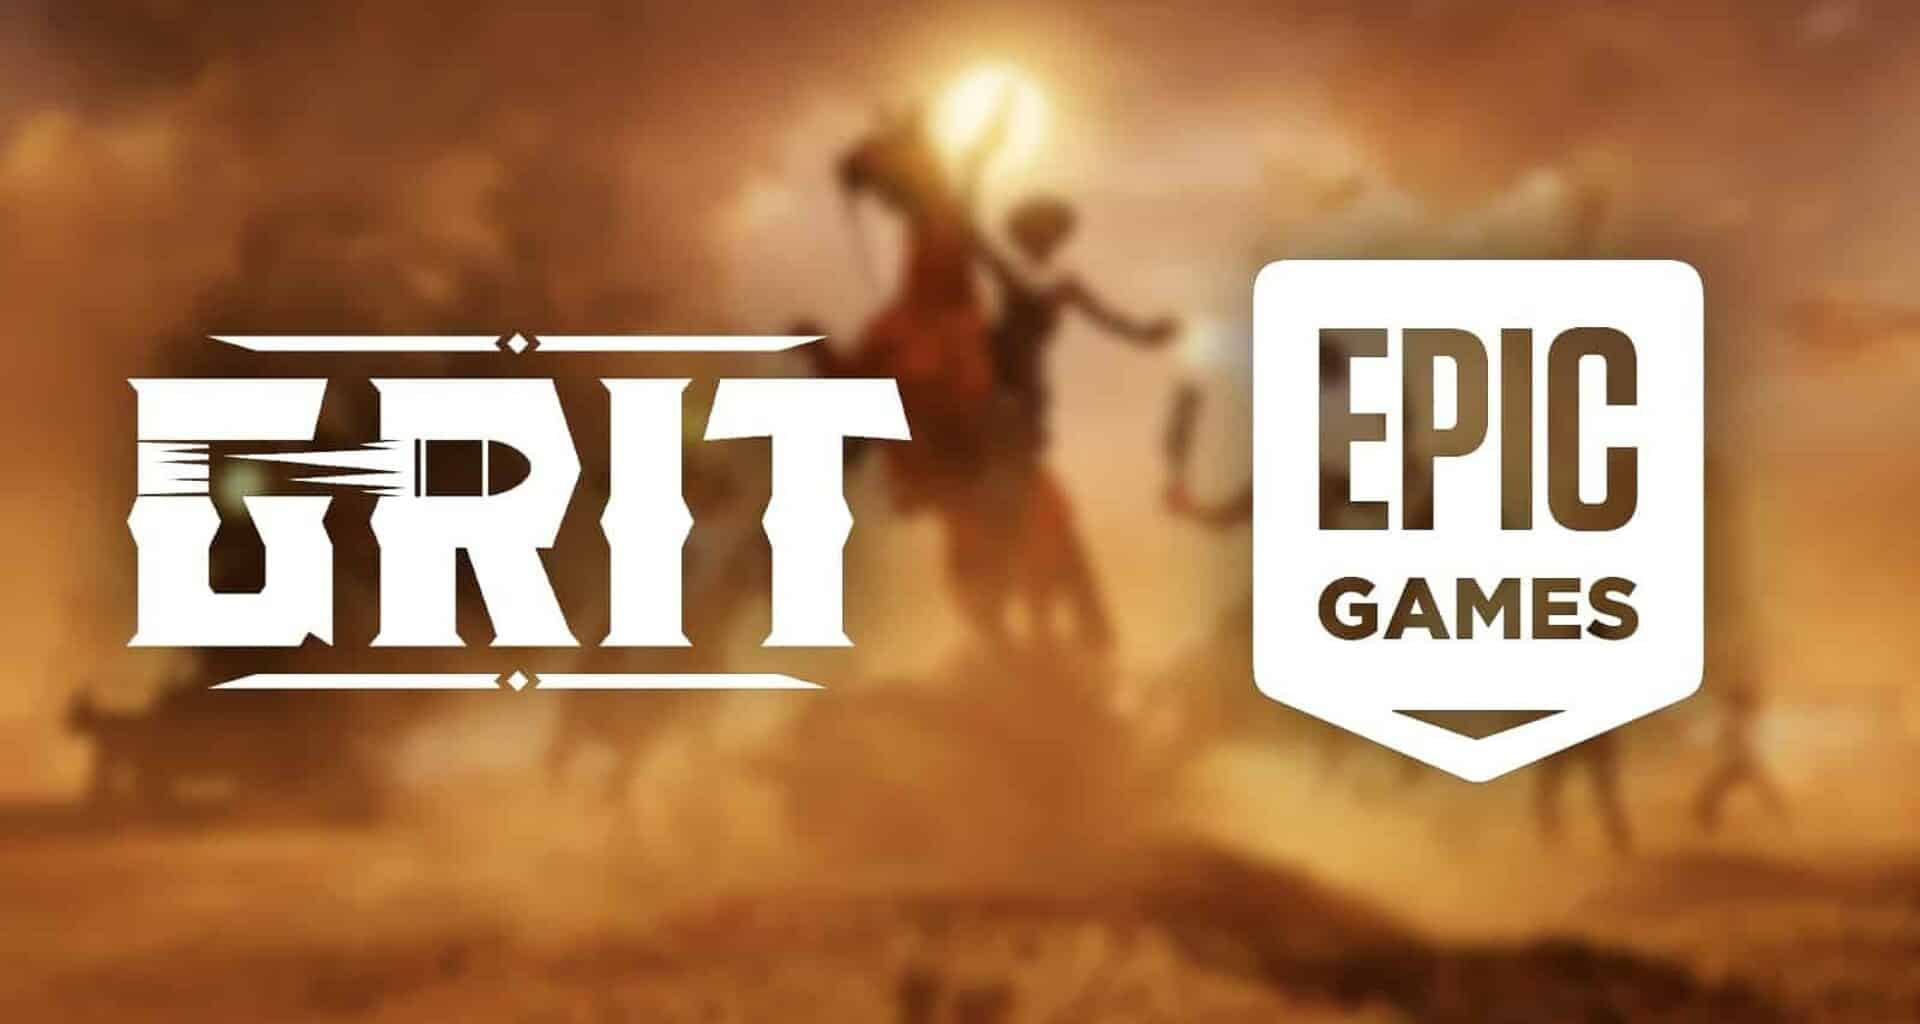 Epic Games Gala